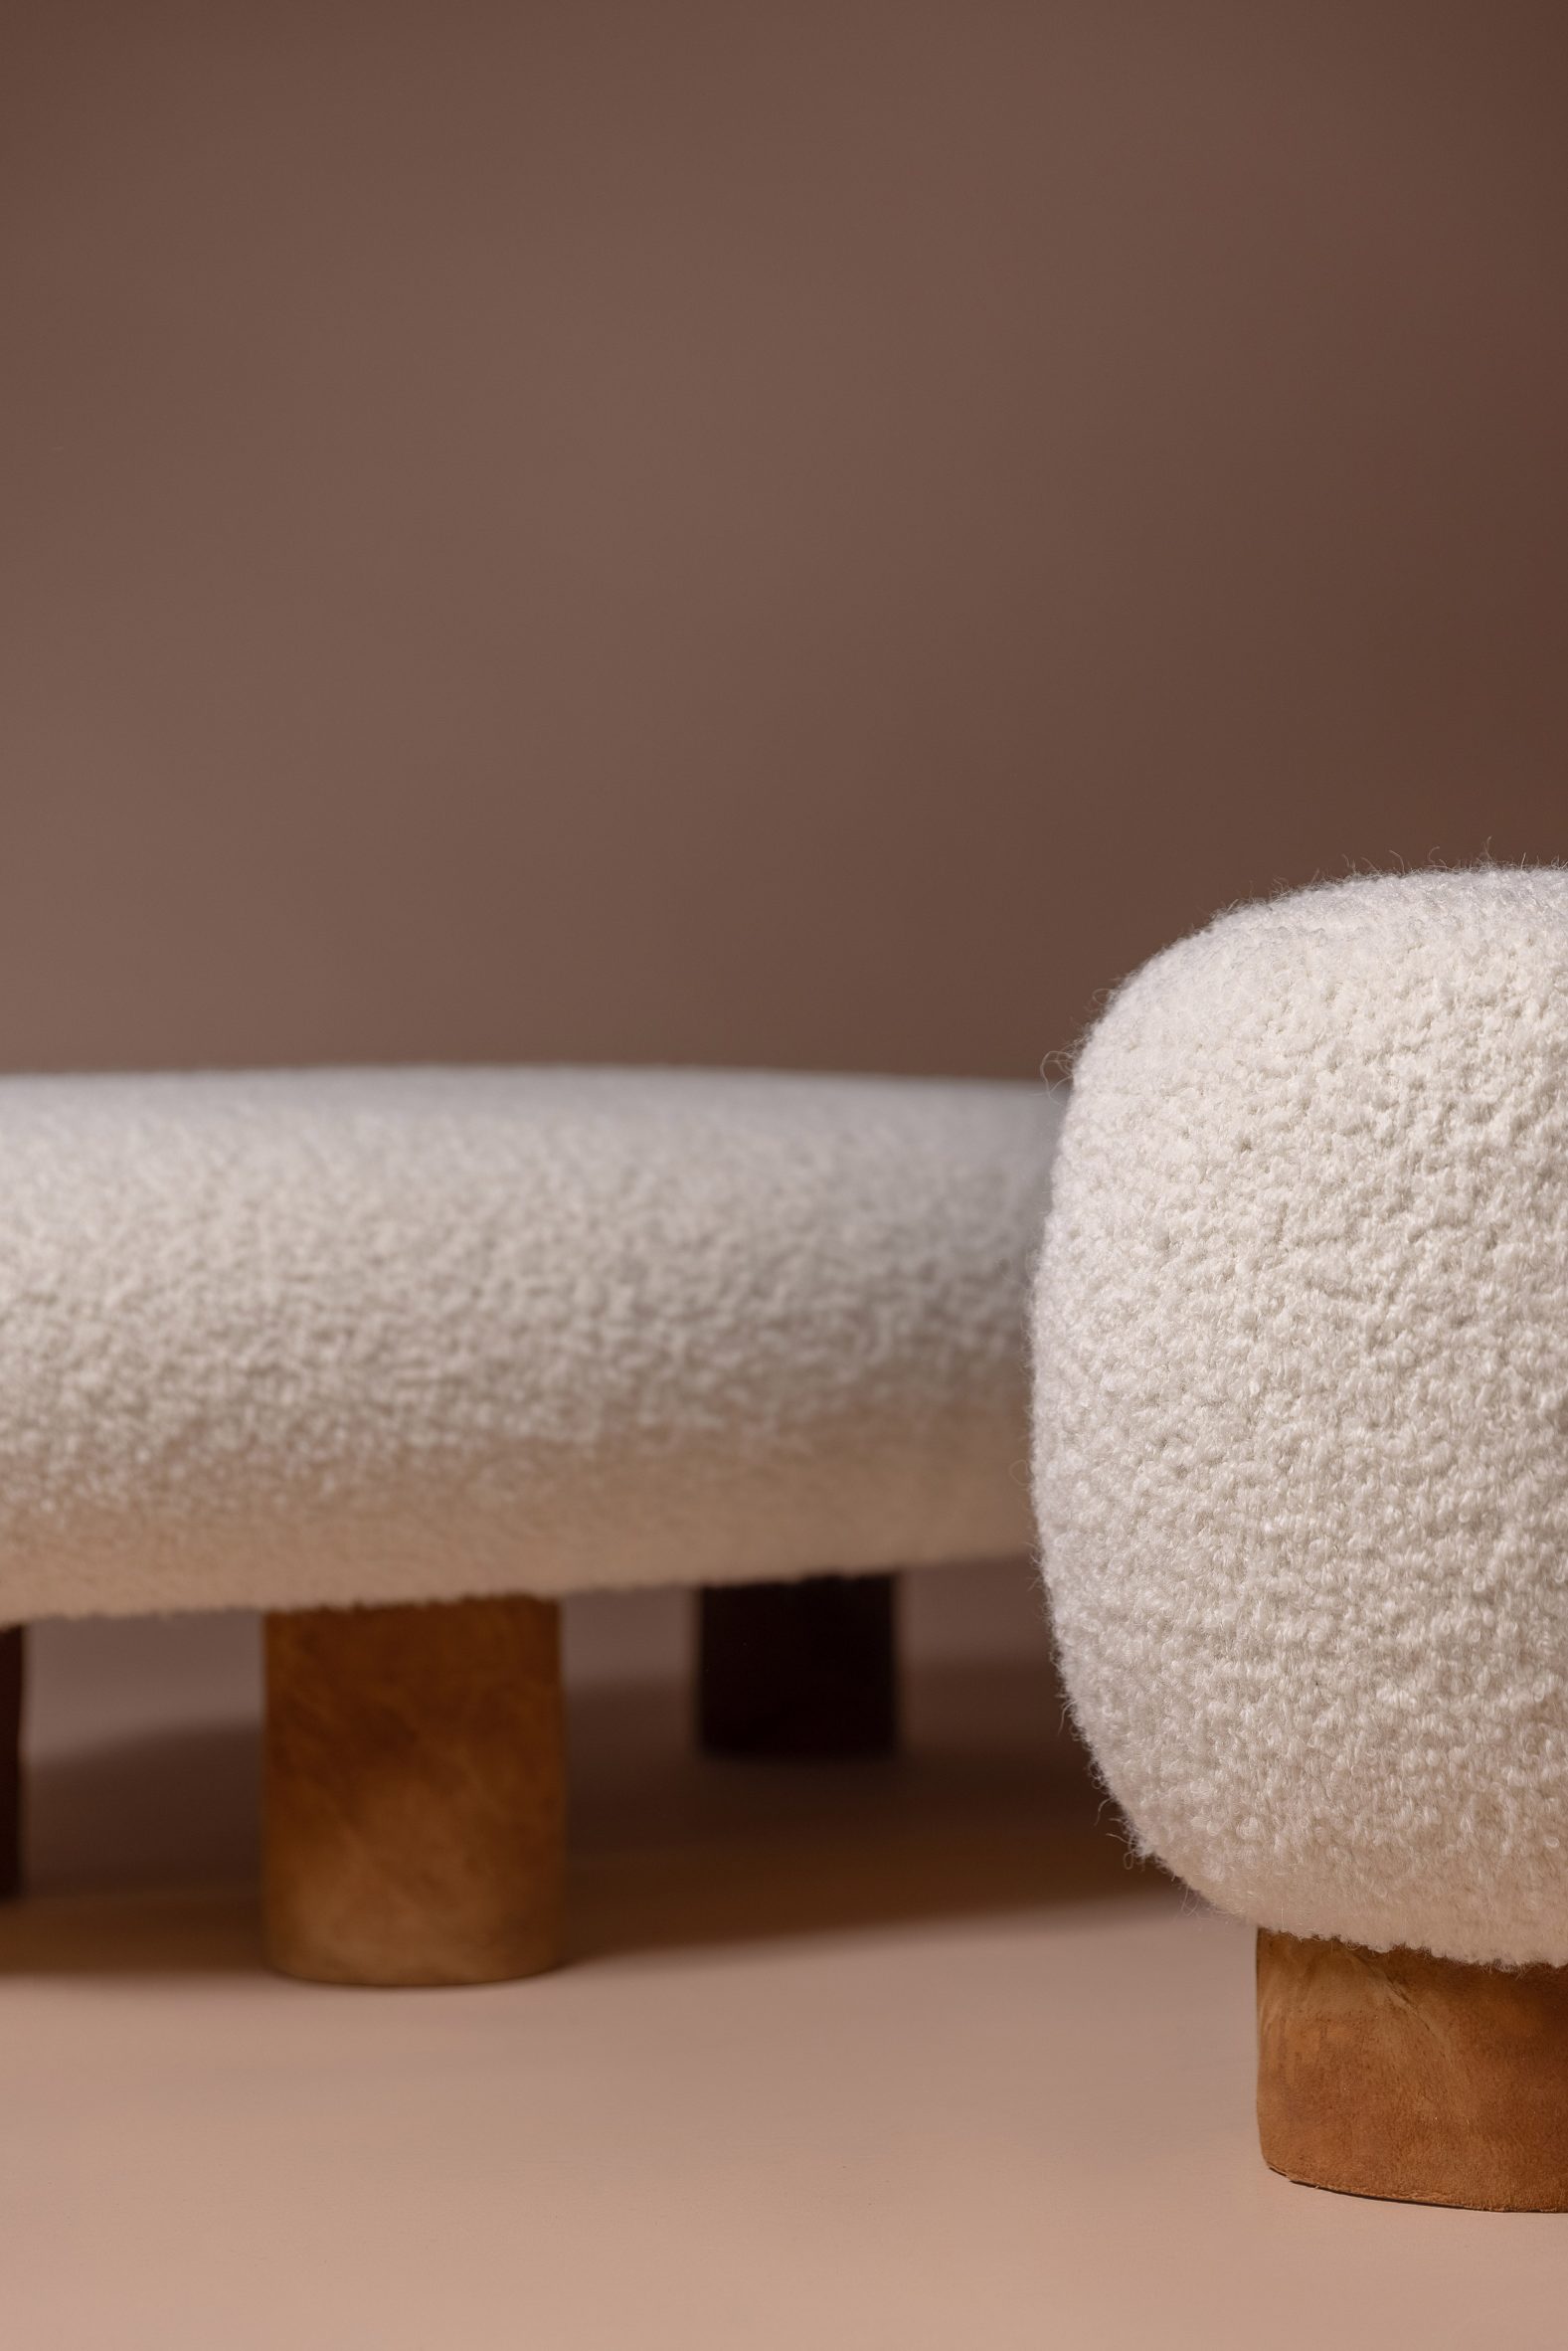 Close up of amadou mushroom leather base on stool and bench by Mari Koppanen